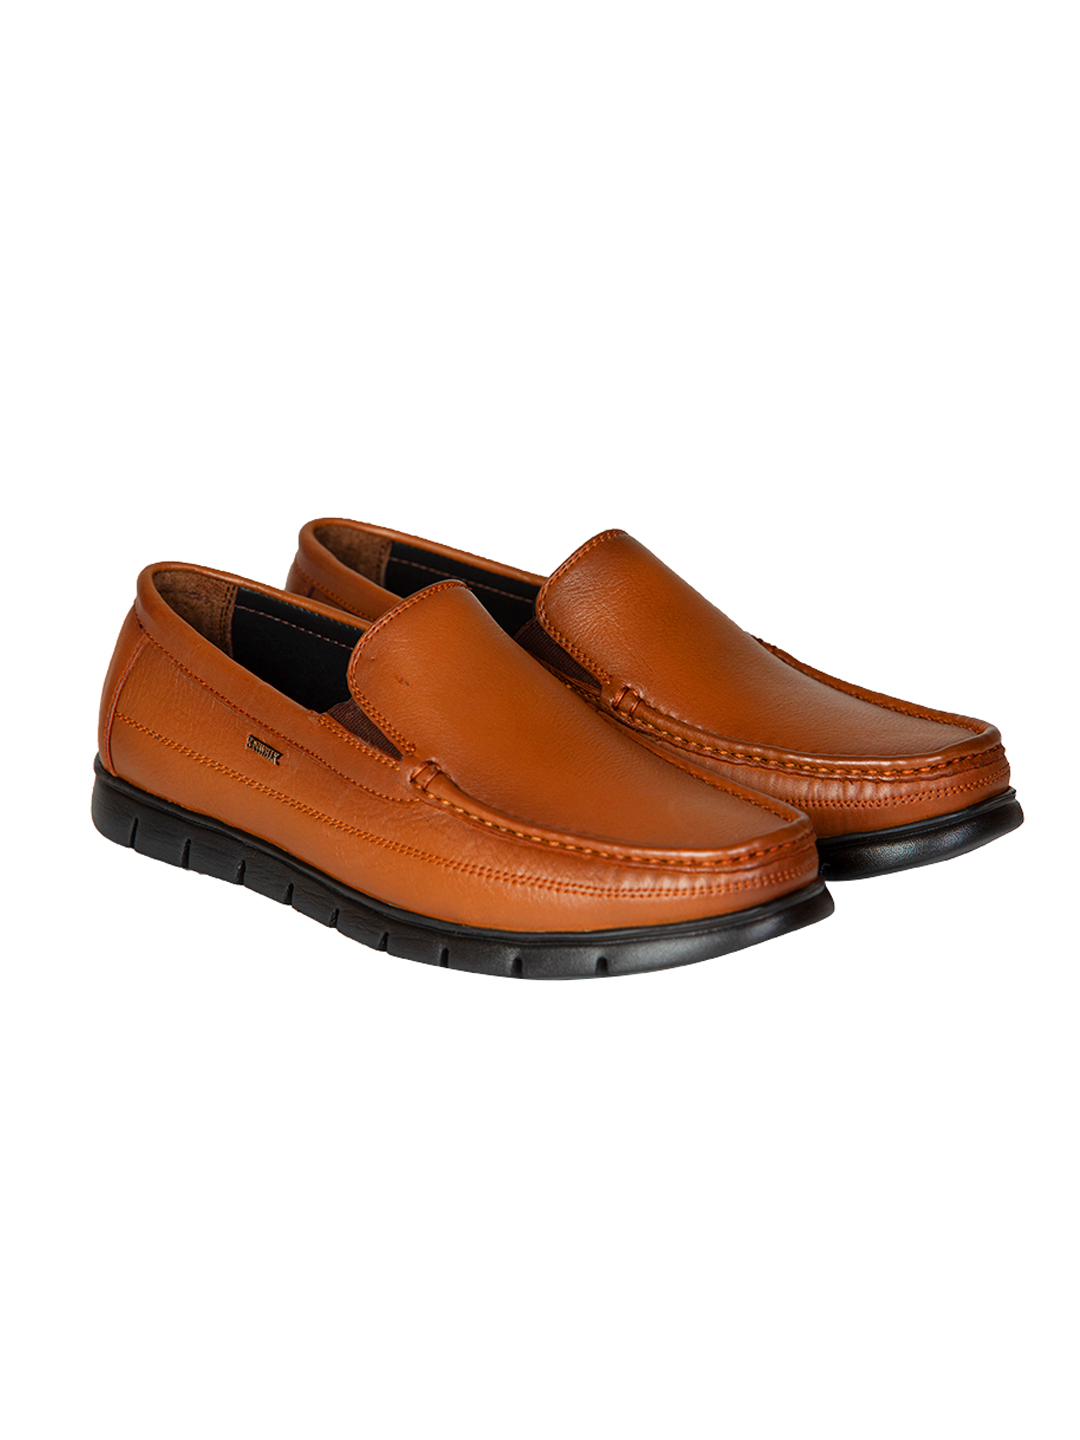 Buy Von Wellx Germany Comfort Tan Zion Shoes Online in Saudi Arabia